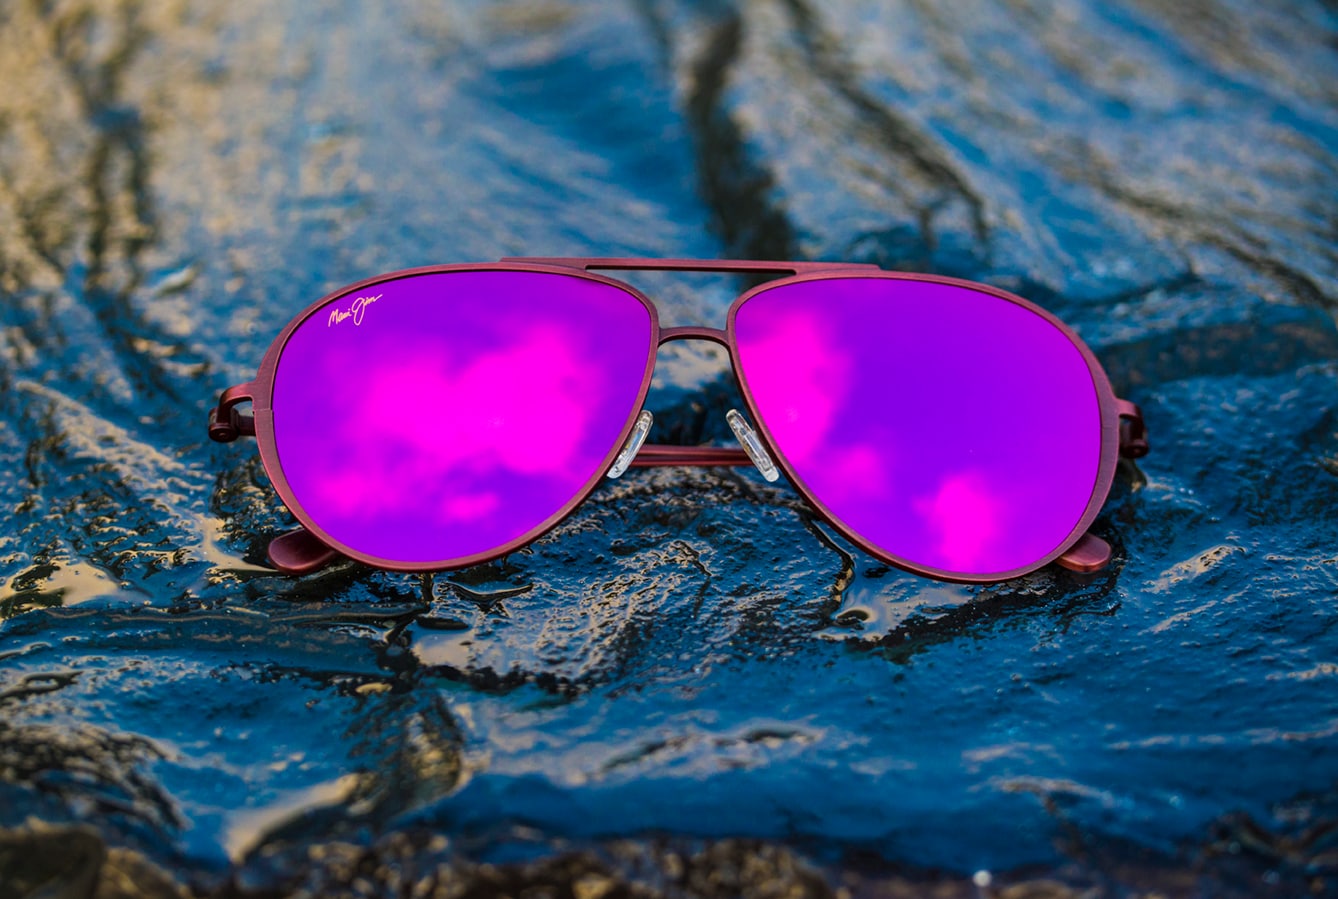 occhiali da sole modello shallows con lenti rosa mostrati sopra a rocce bagnate